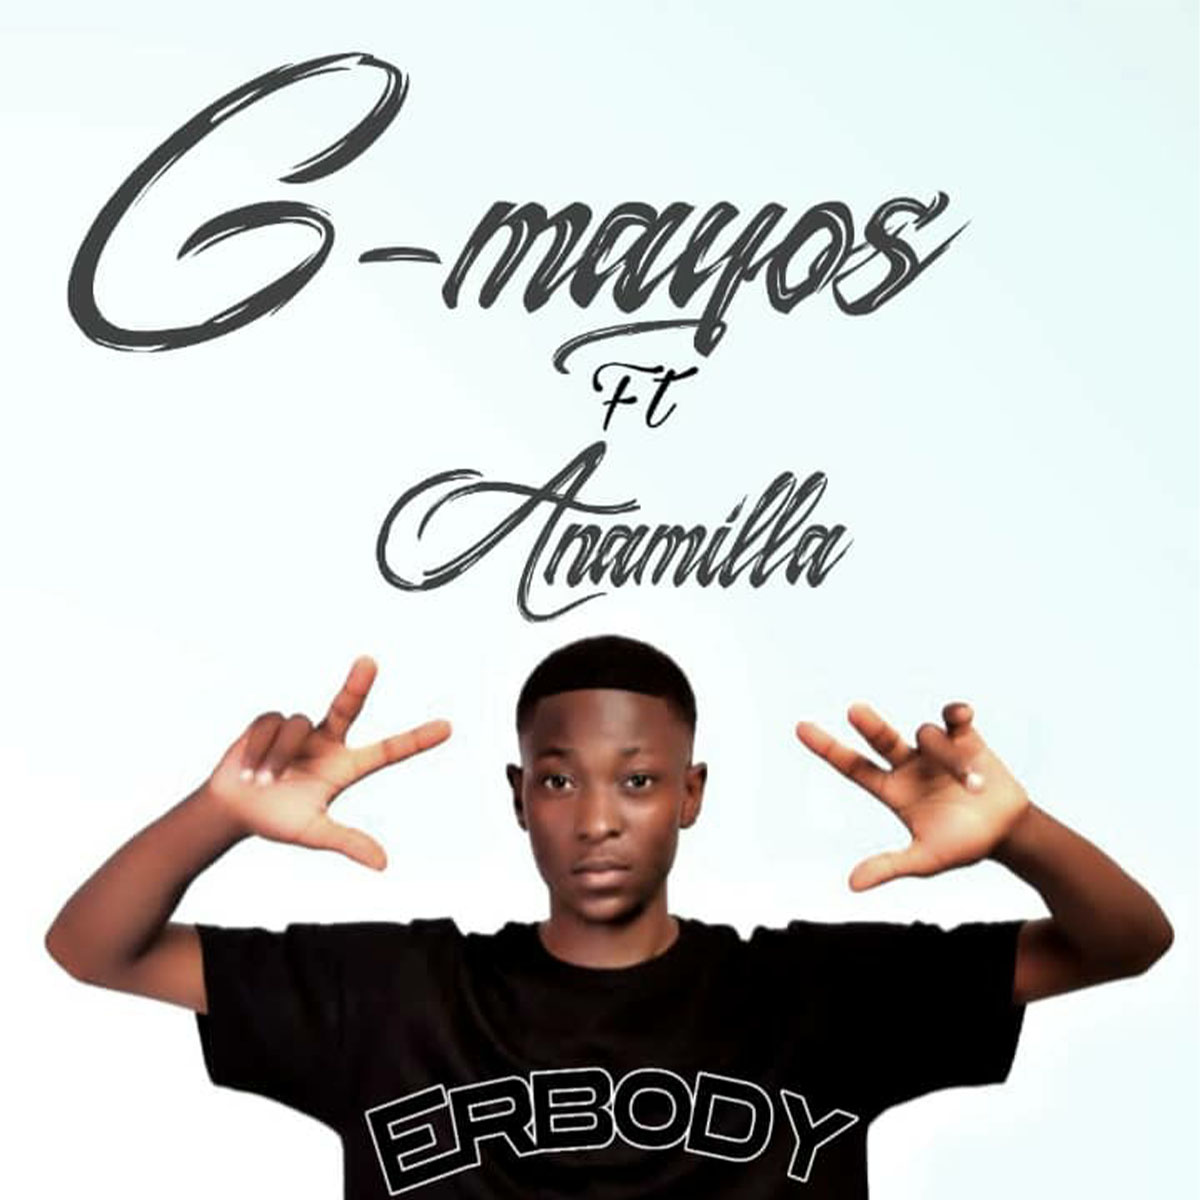 G-Mayos ft. Anamilla - Erbody